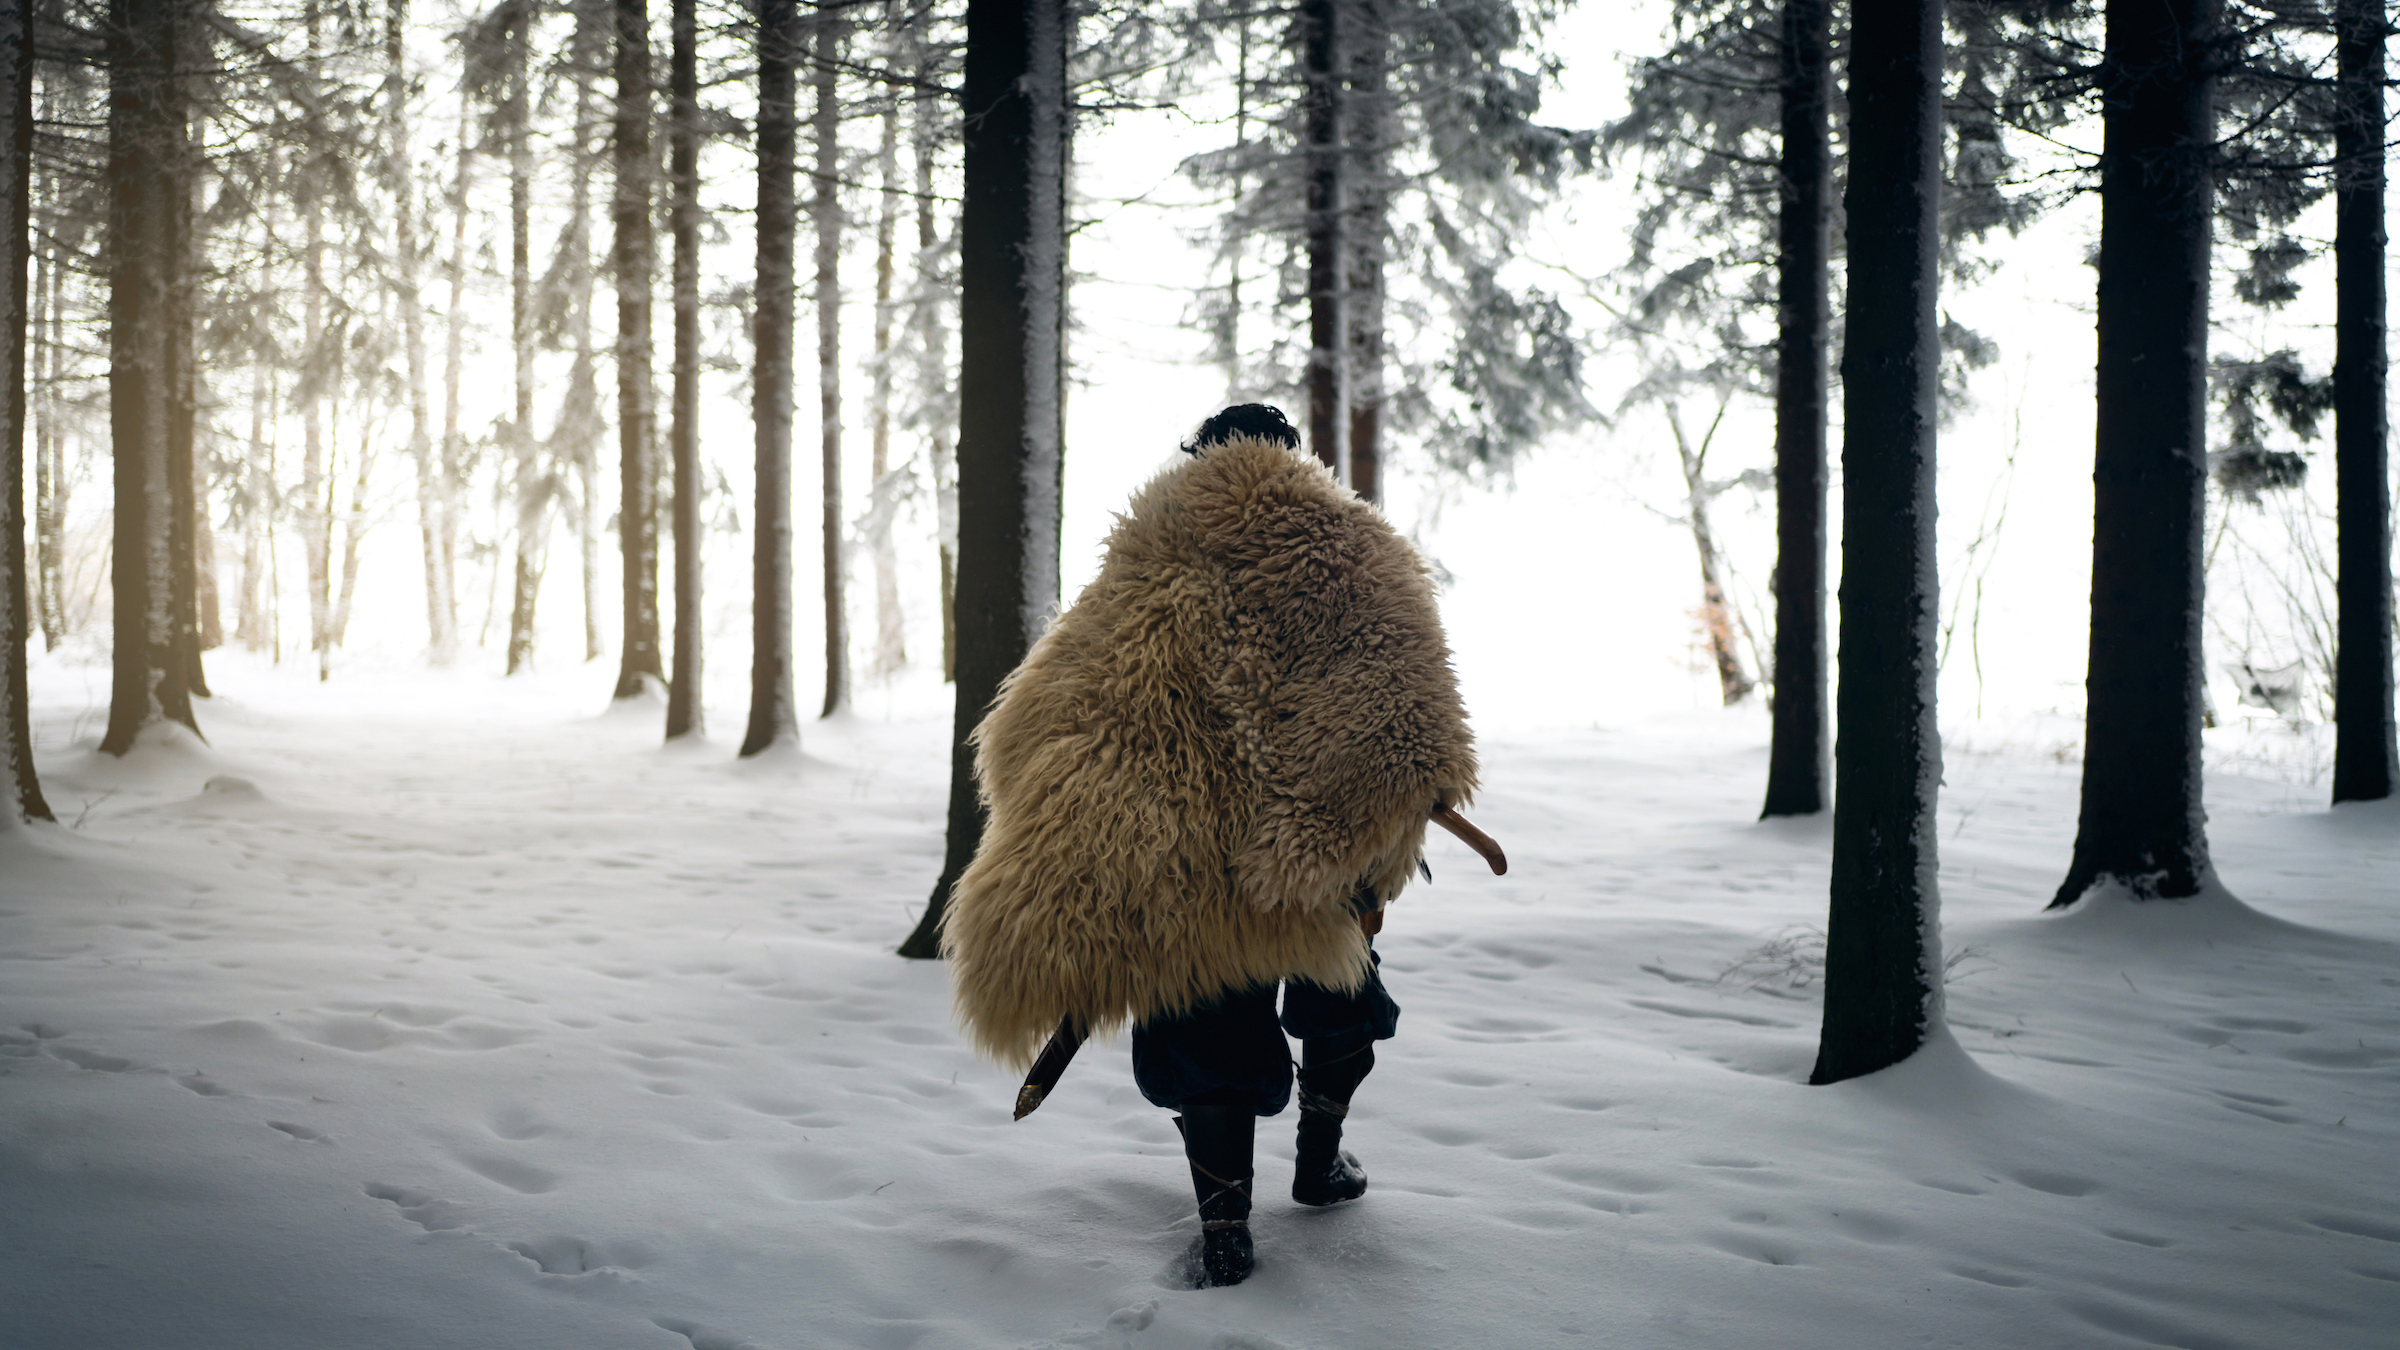 Съвременно изображение на воин от ледниковата епоха, облечен в животинска козина и разхождащ се в снежна гора.